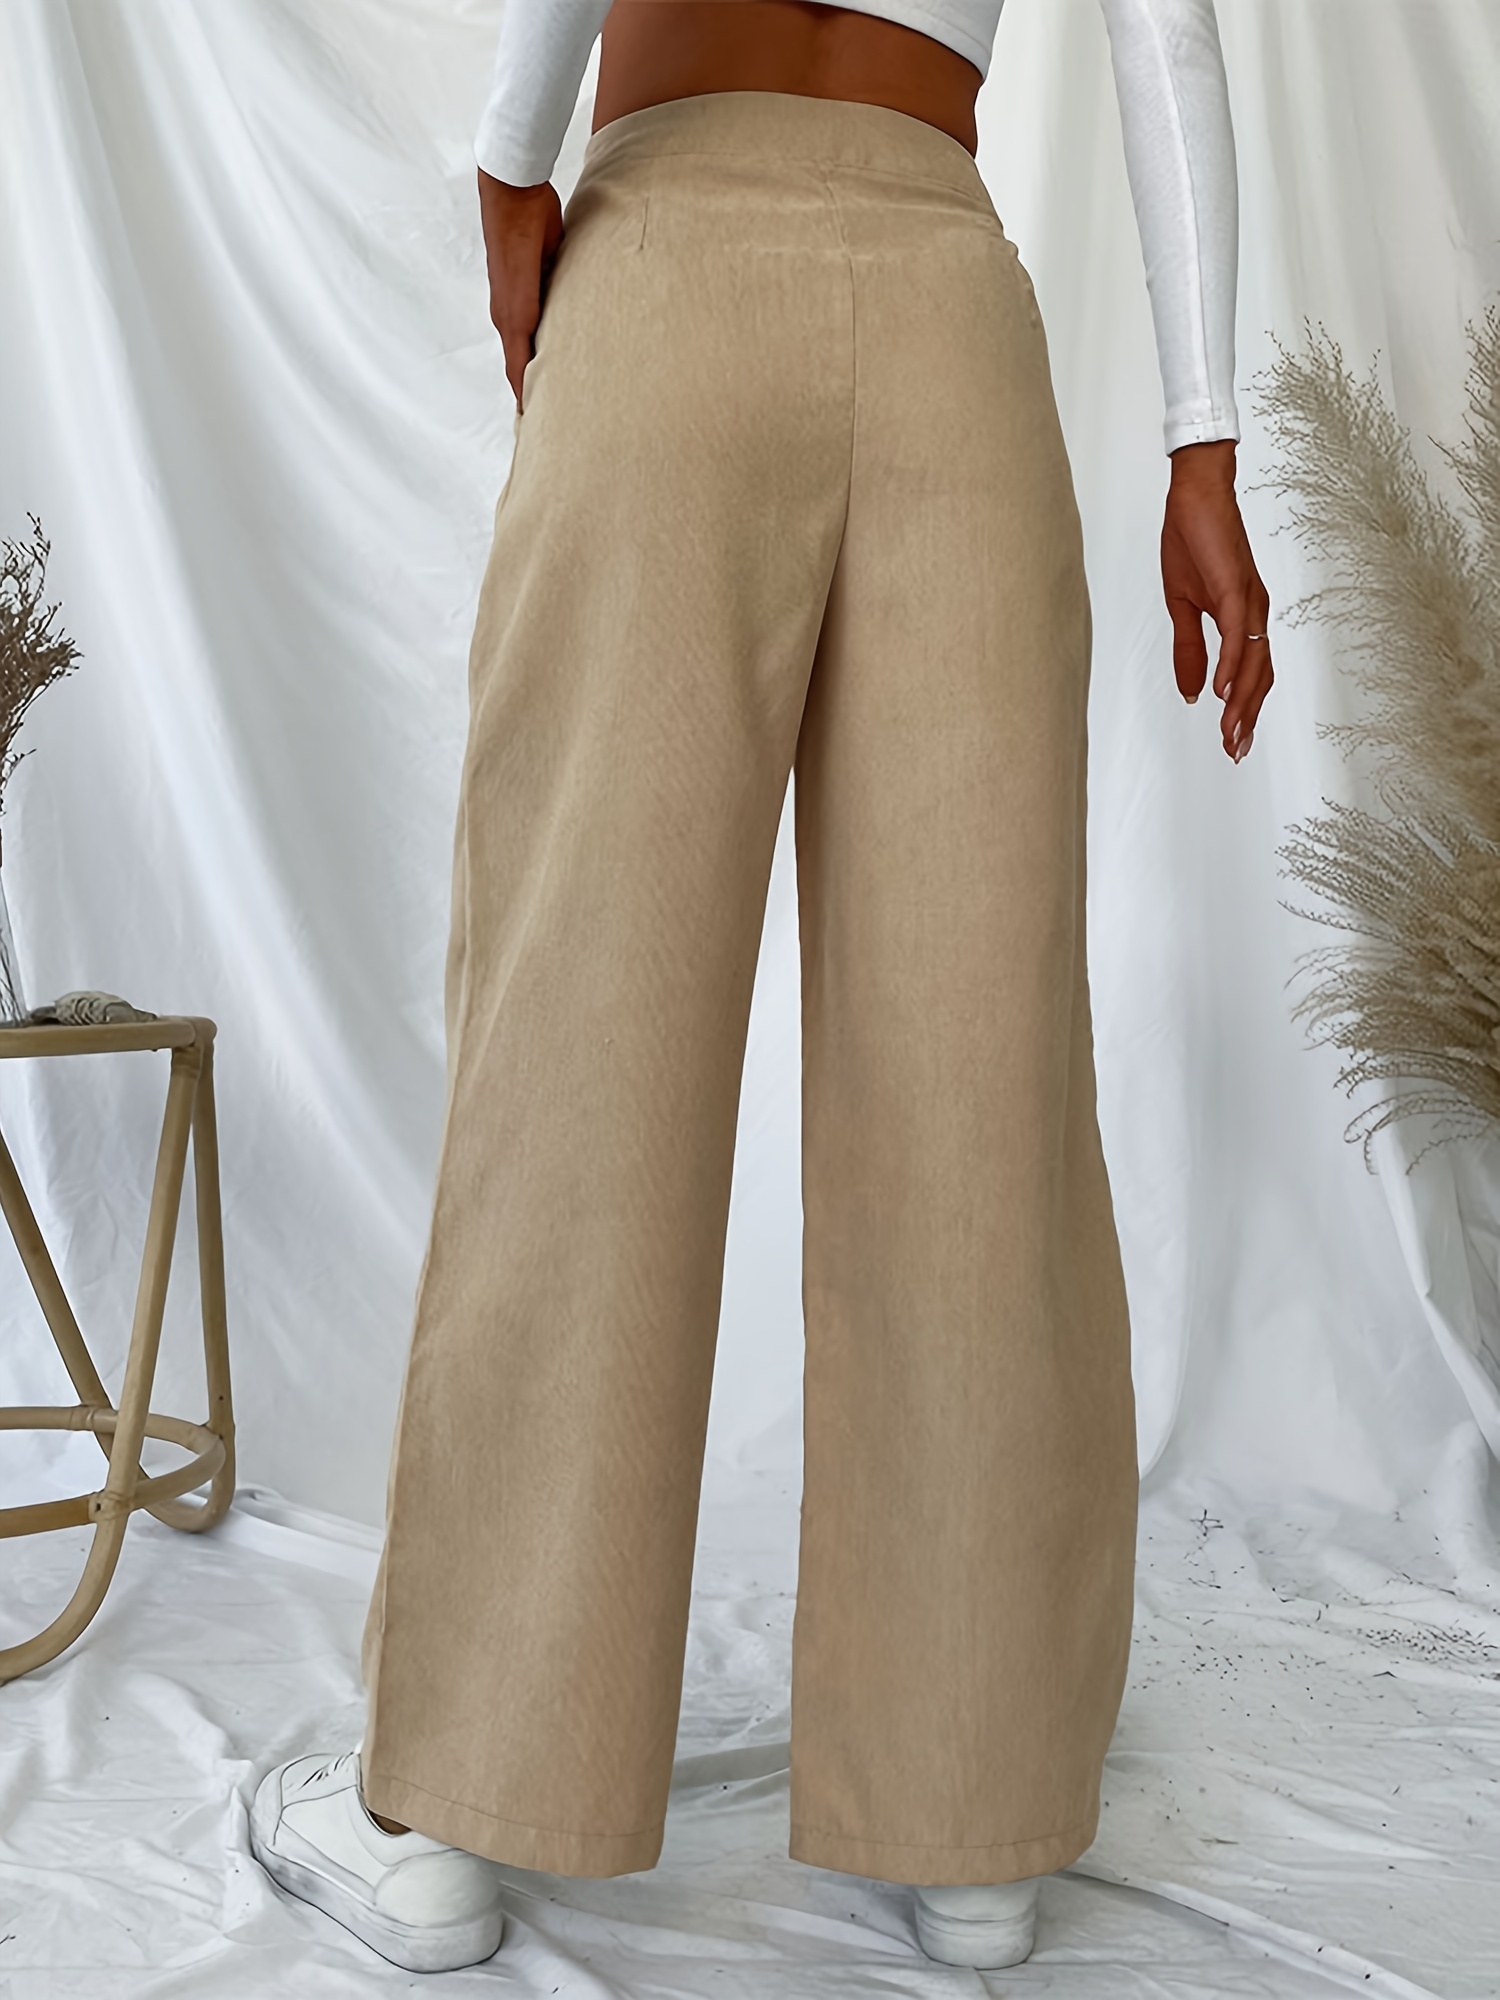 Pantalones sólidos largos de pierna ancha para mujer, pantalones elegantes  y con estilo para oficina y trabajo, ropa de mujer